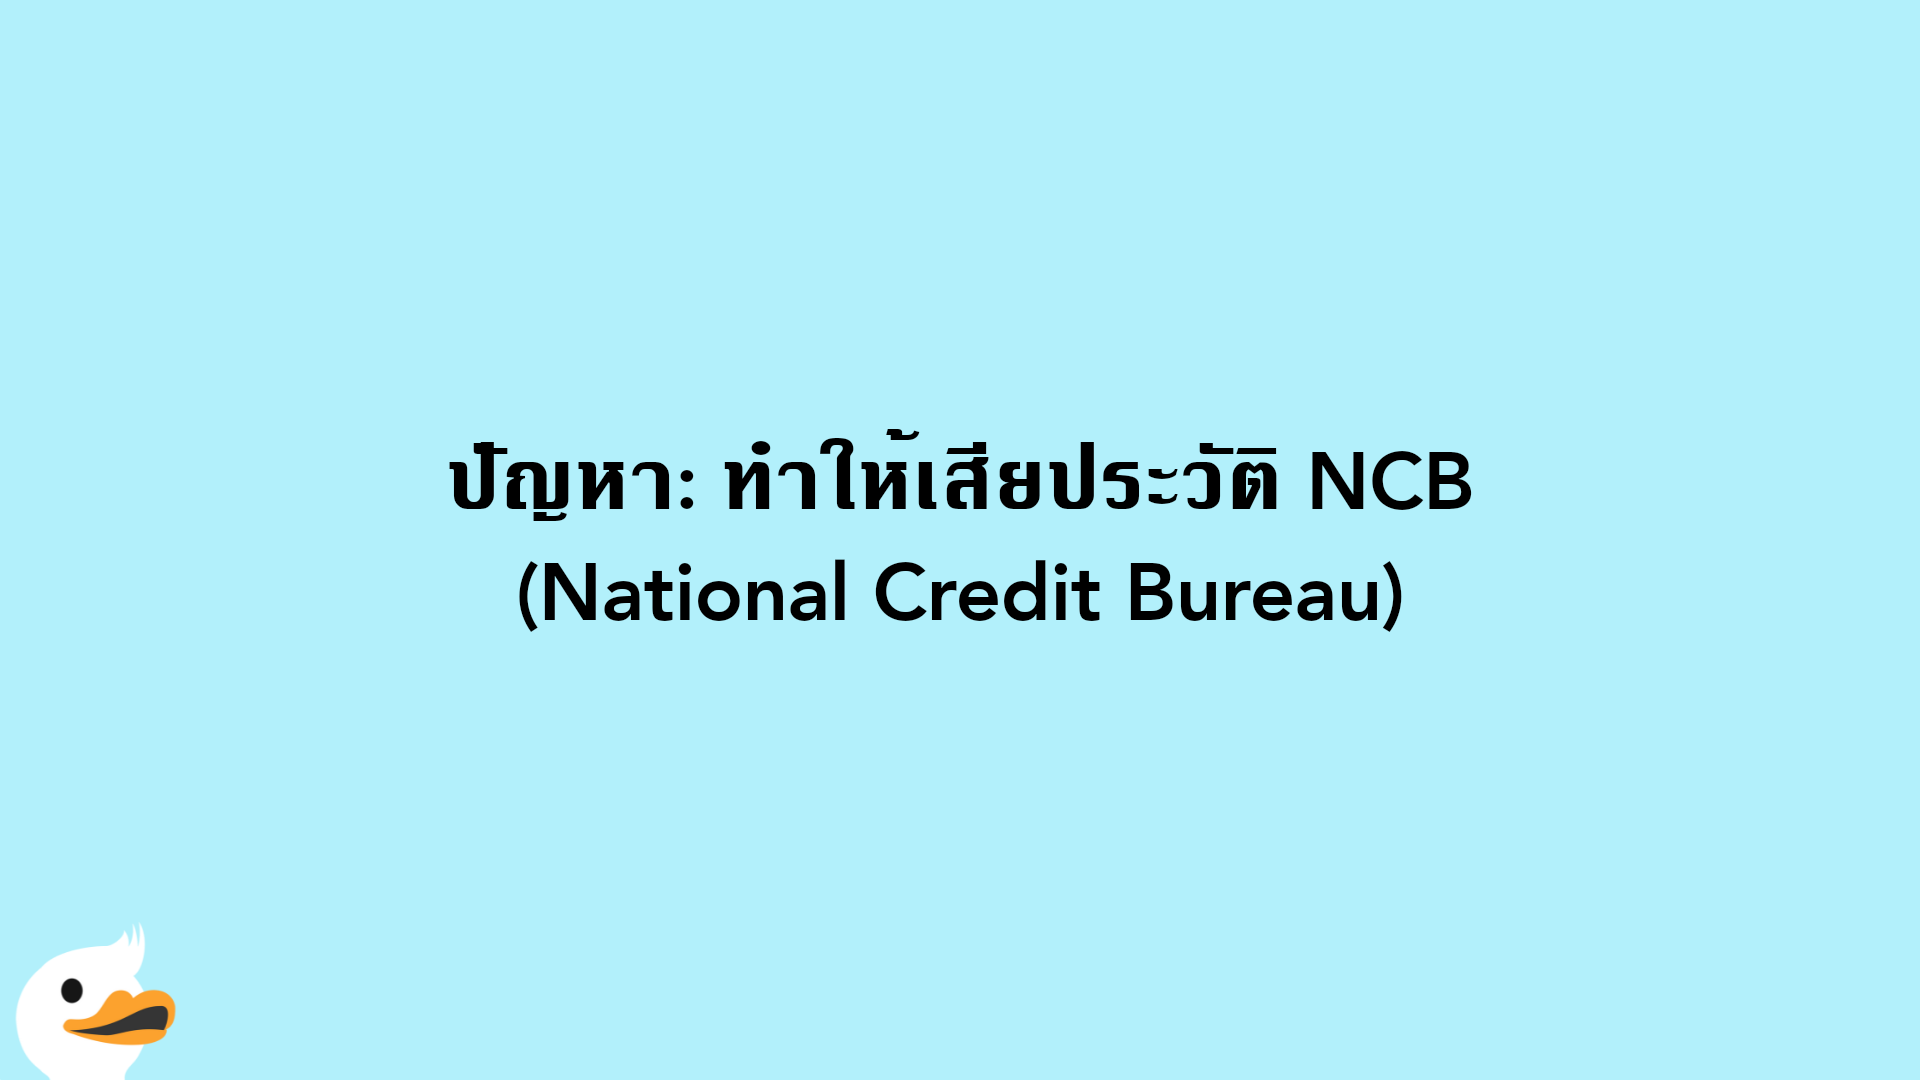 ปัญหา: ทำให้เสียประวัติ NCB (National Credit Bureau)